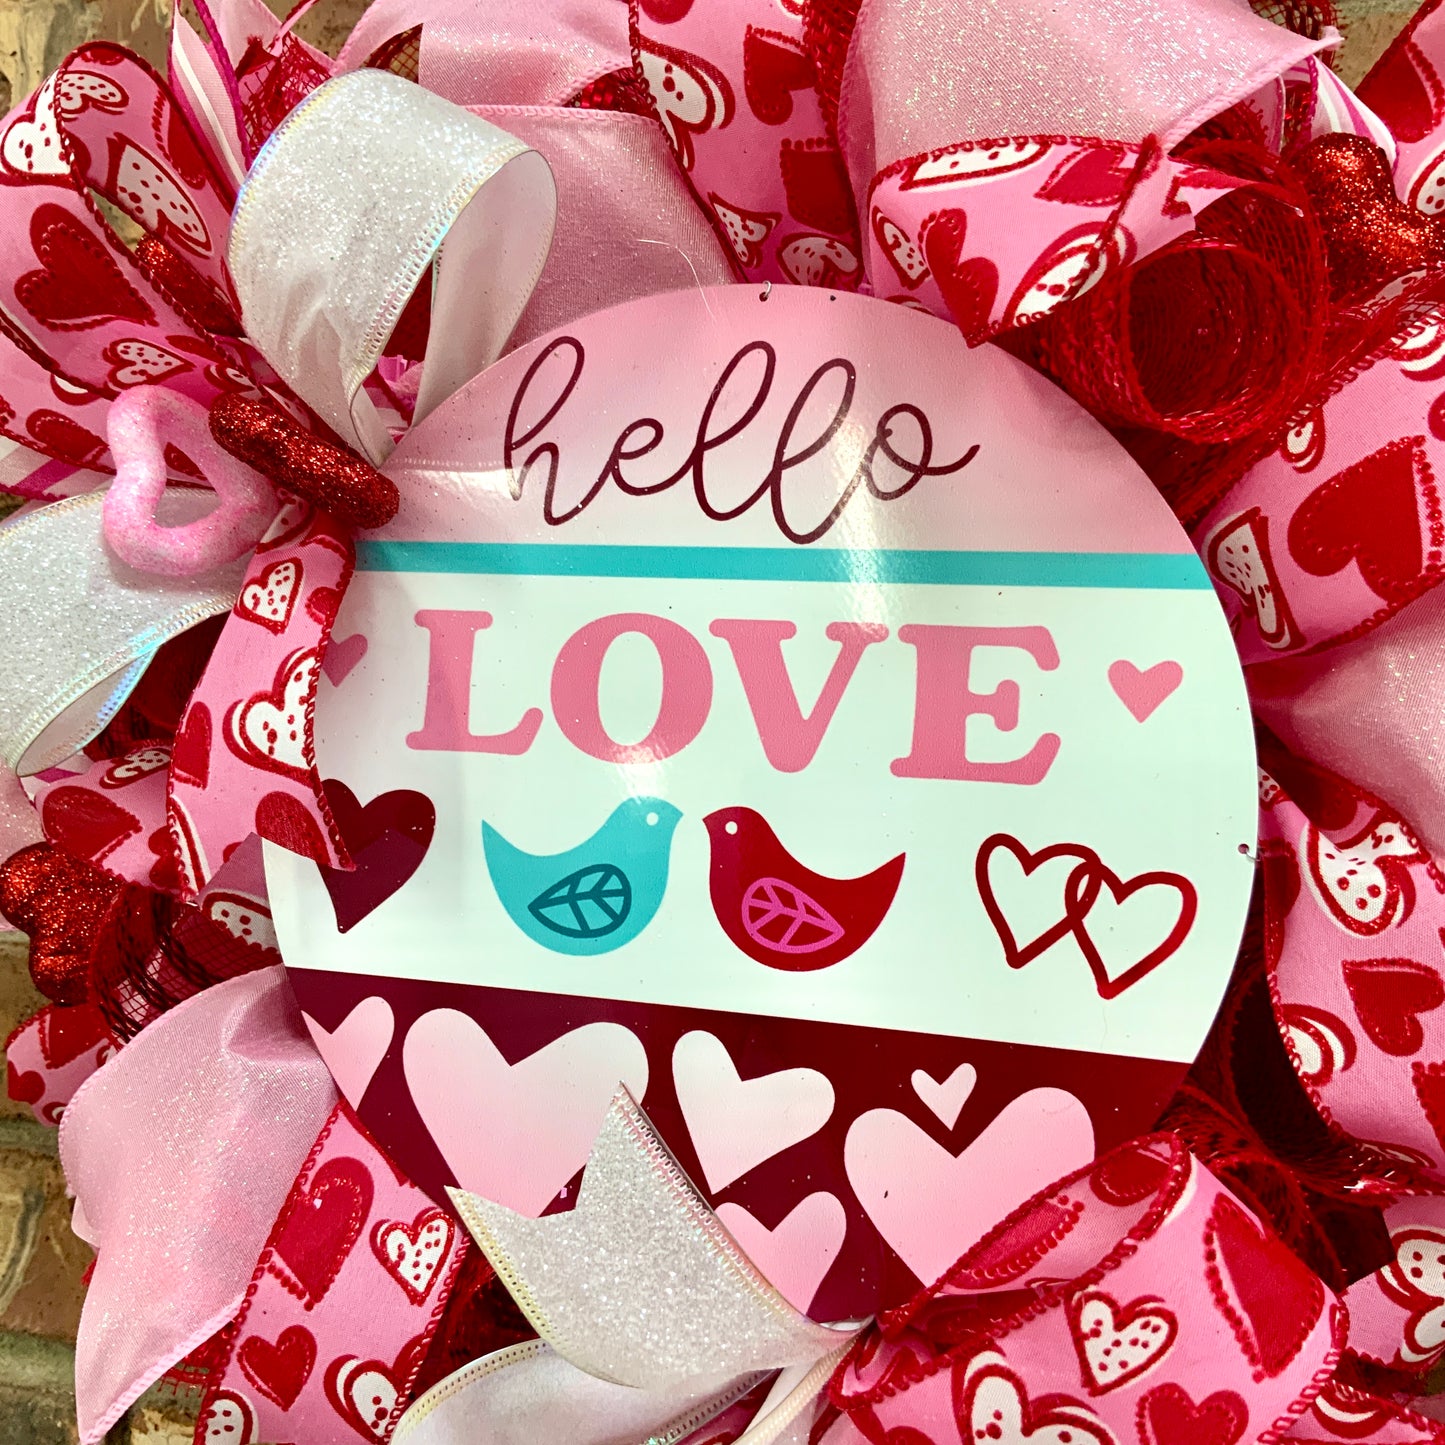 Valentines Day Wreath, Valentines Day Door Hanger, Valentine Love Wreath, Valentine Day Heart Wreath, Heart Wreath